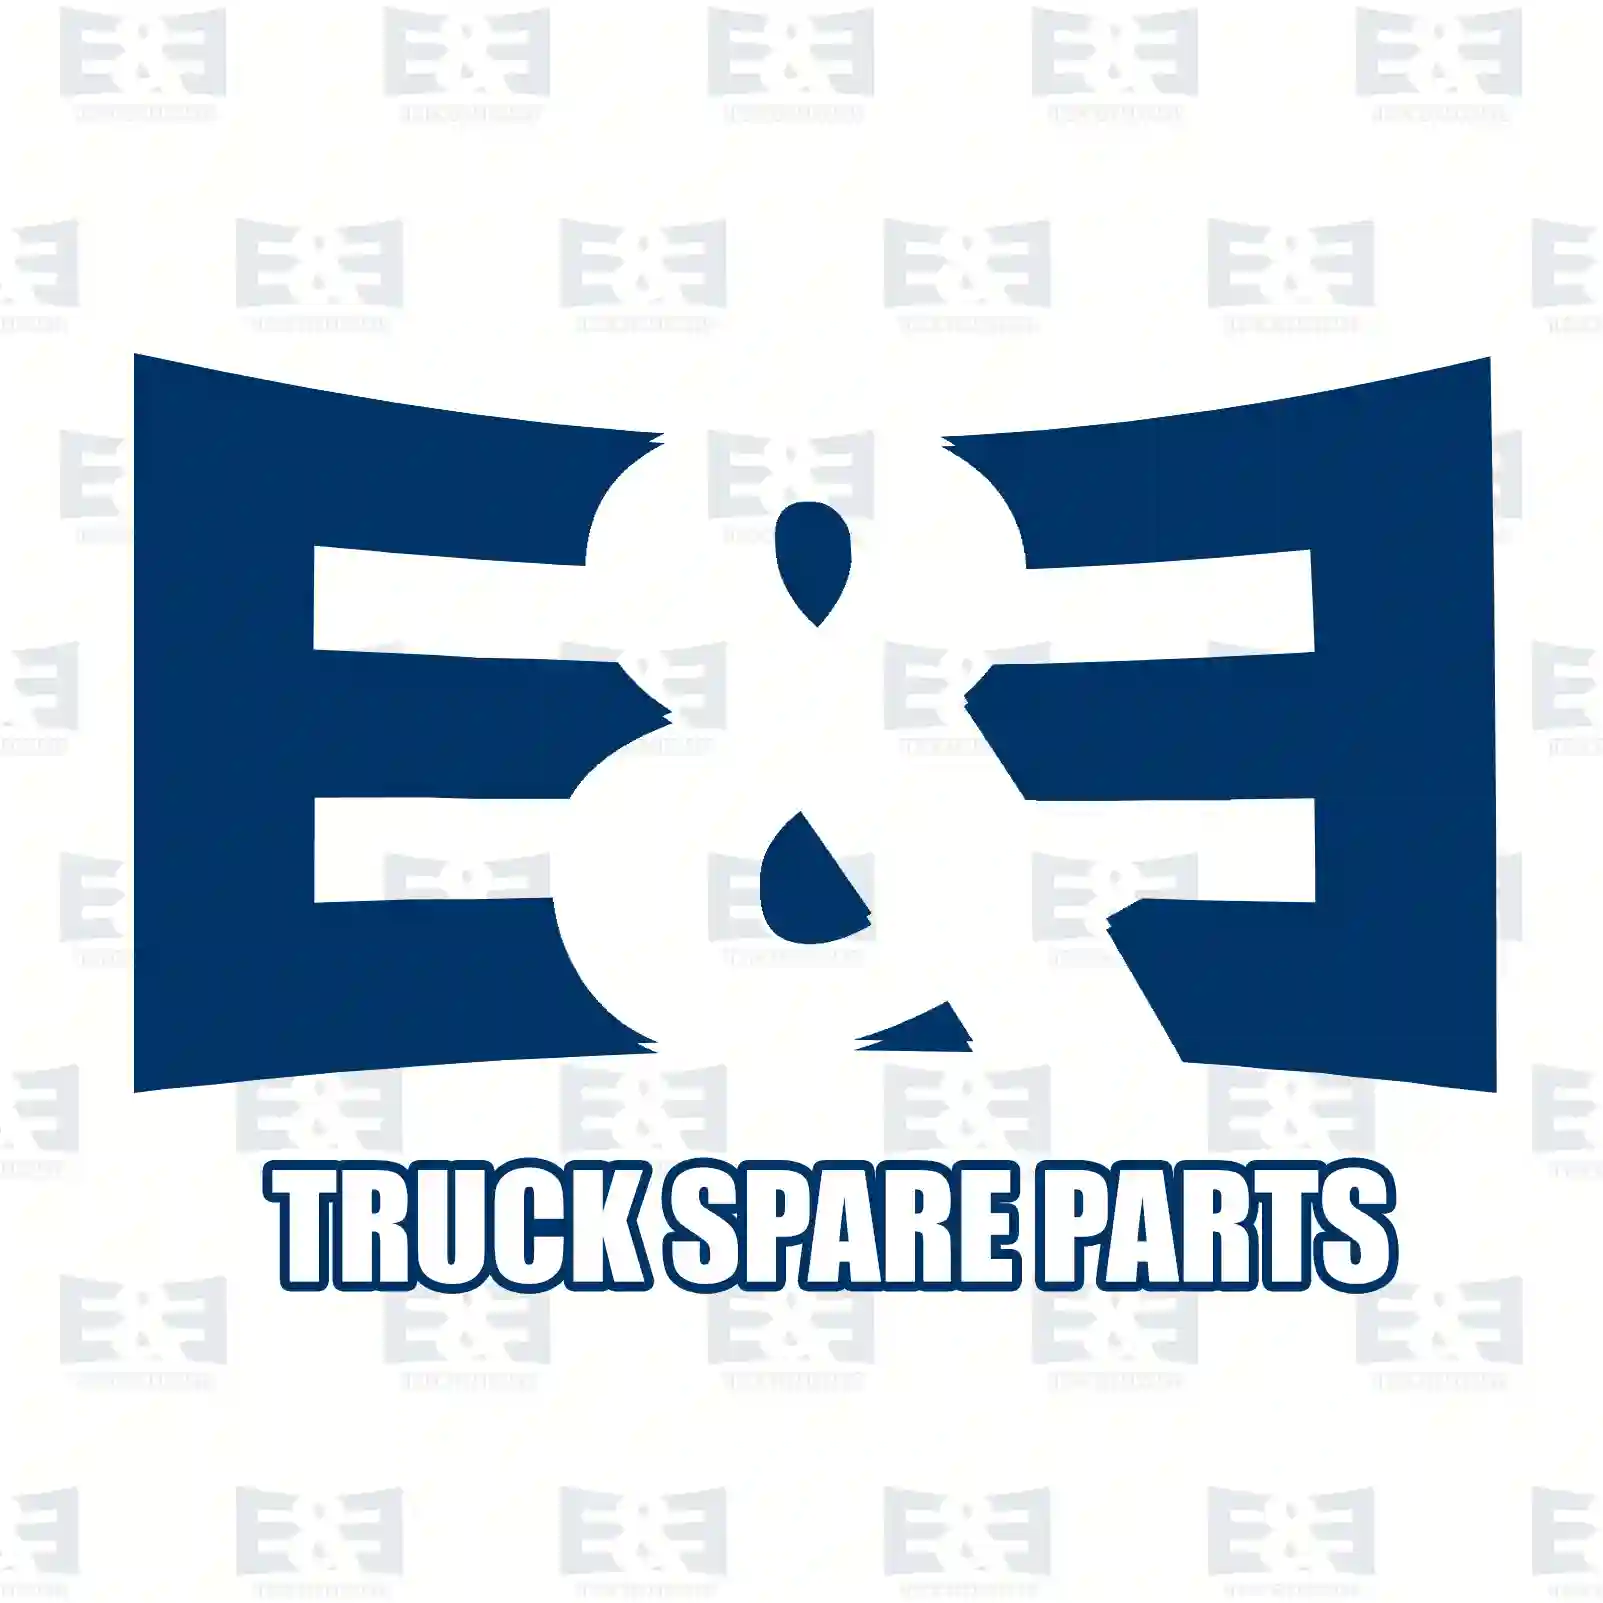 Oil seal, 2E2278978, 1652780, 1669562, , , ||  2E2278978 E&E Truck Spare Parts | Truck Spare Parts, Auotomotive Spare Parts Oil seal, 2E2278978, 1652780, 1669562, , , ||  2E2278978 E&E Truck Spare Parts | Truck Spare Parts, Auotomotive Spare Parts